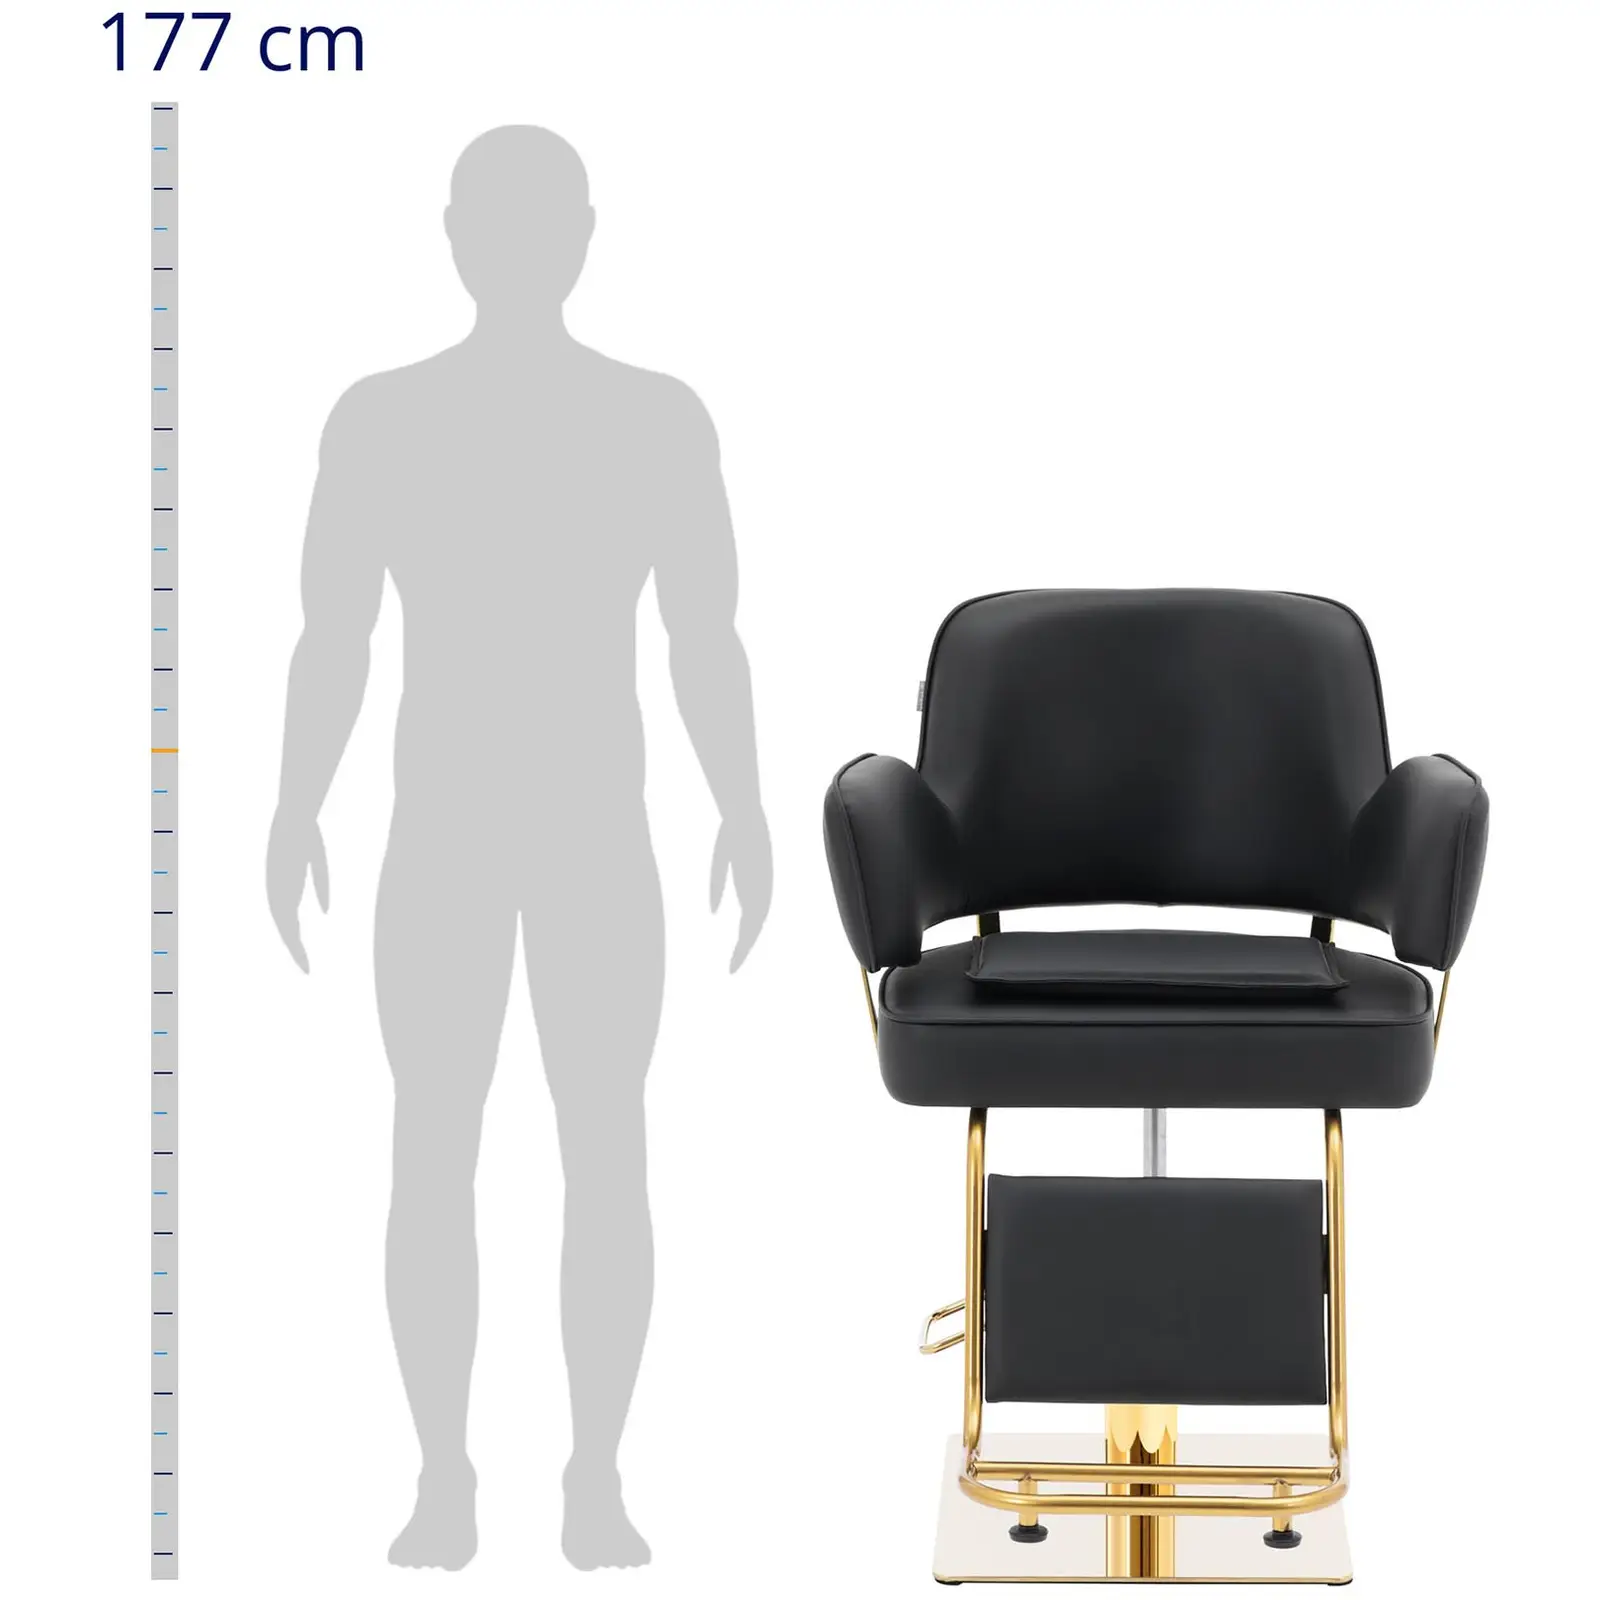 Fodrász szék lábtartóval - 890–1020 mm - 200 kg - fekete / arany